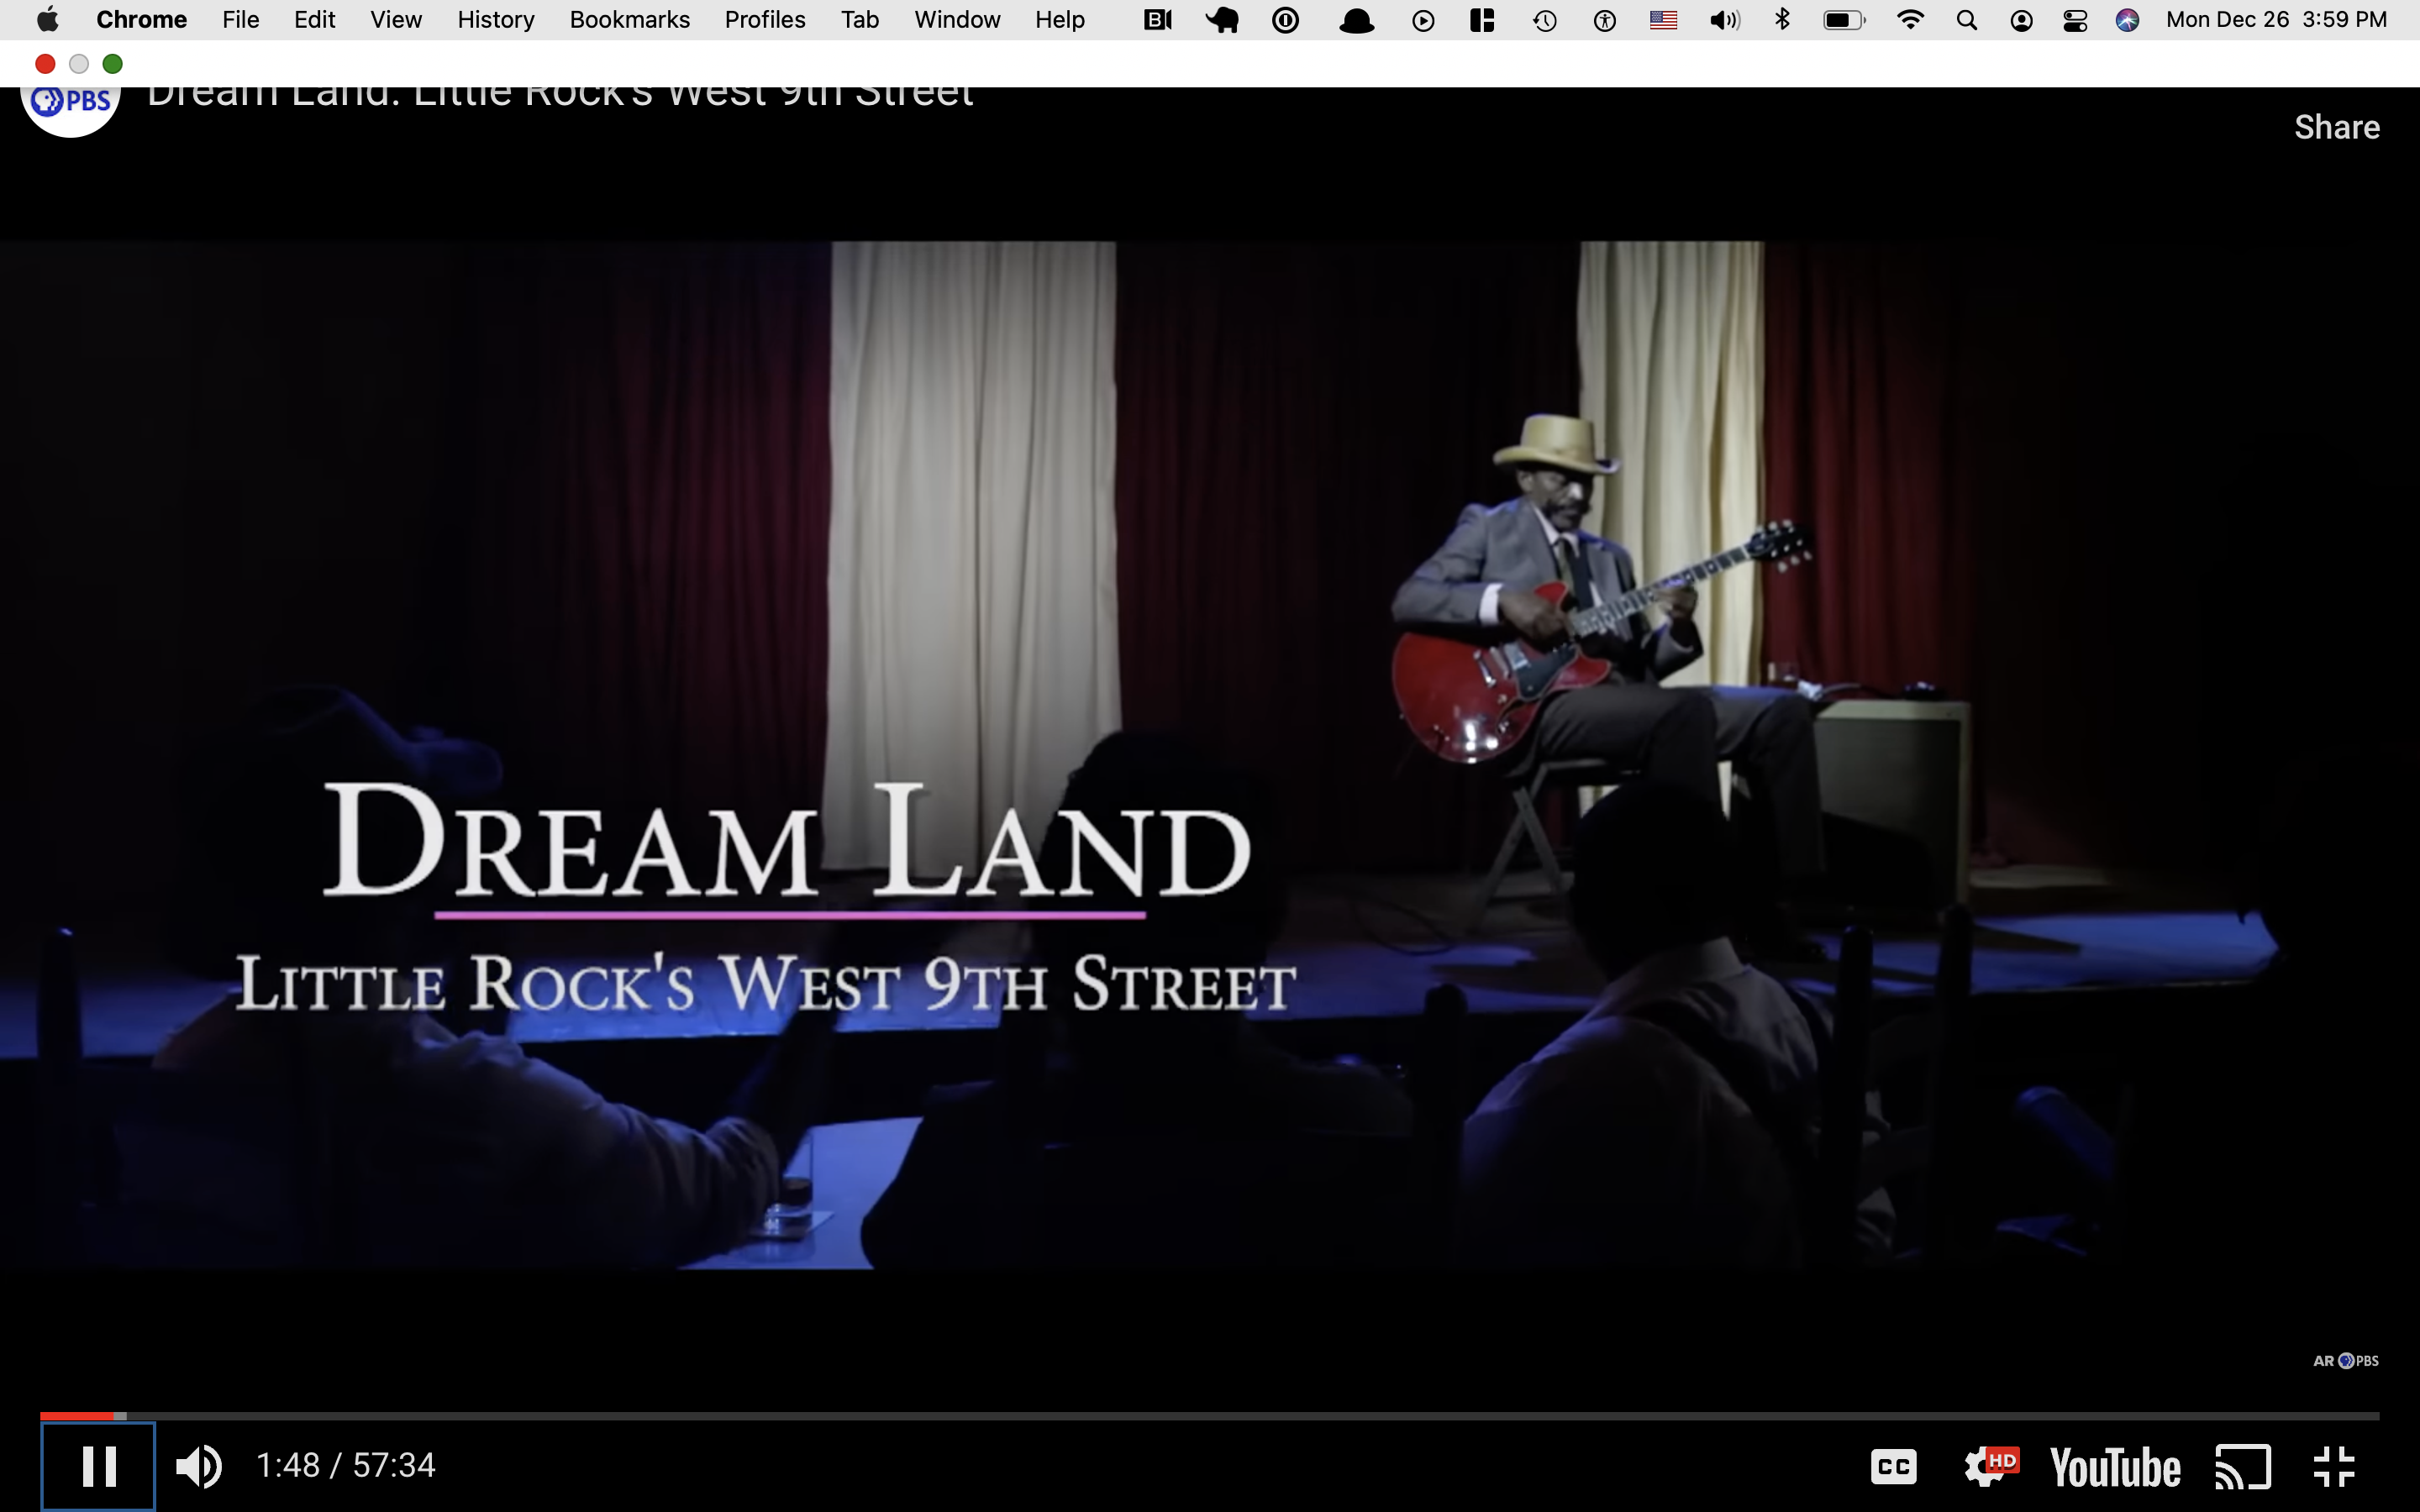 Dreamland: Little Rock’s West 9th Street